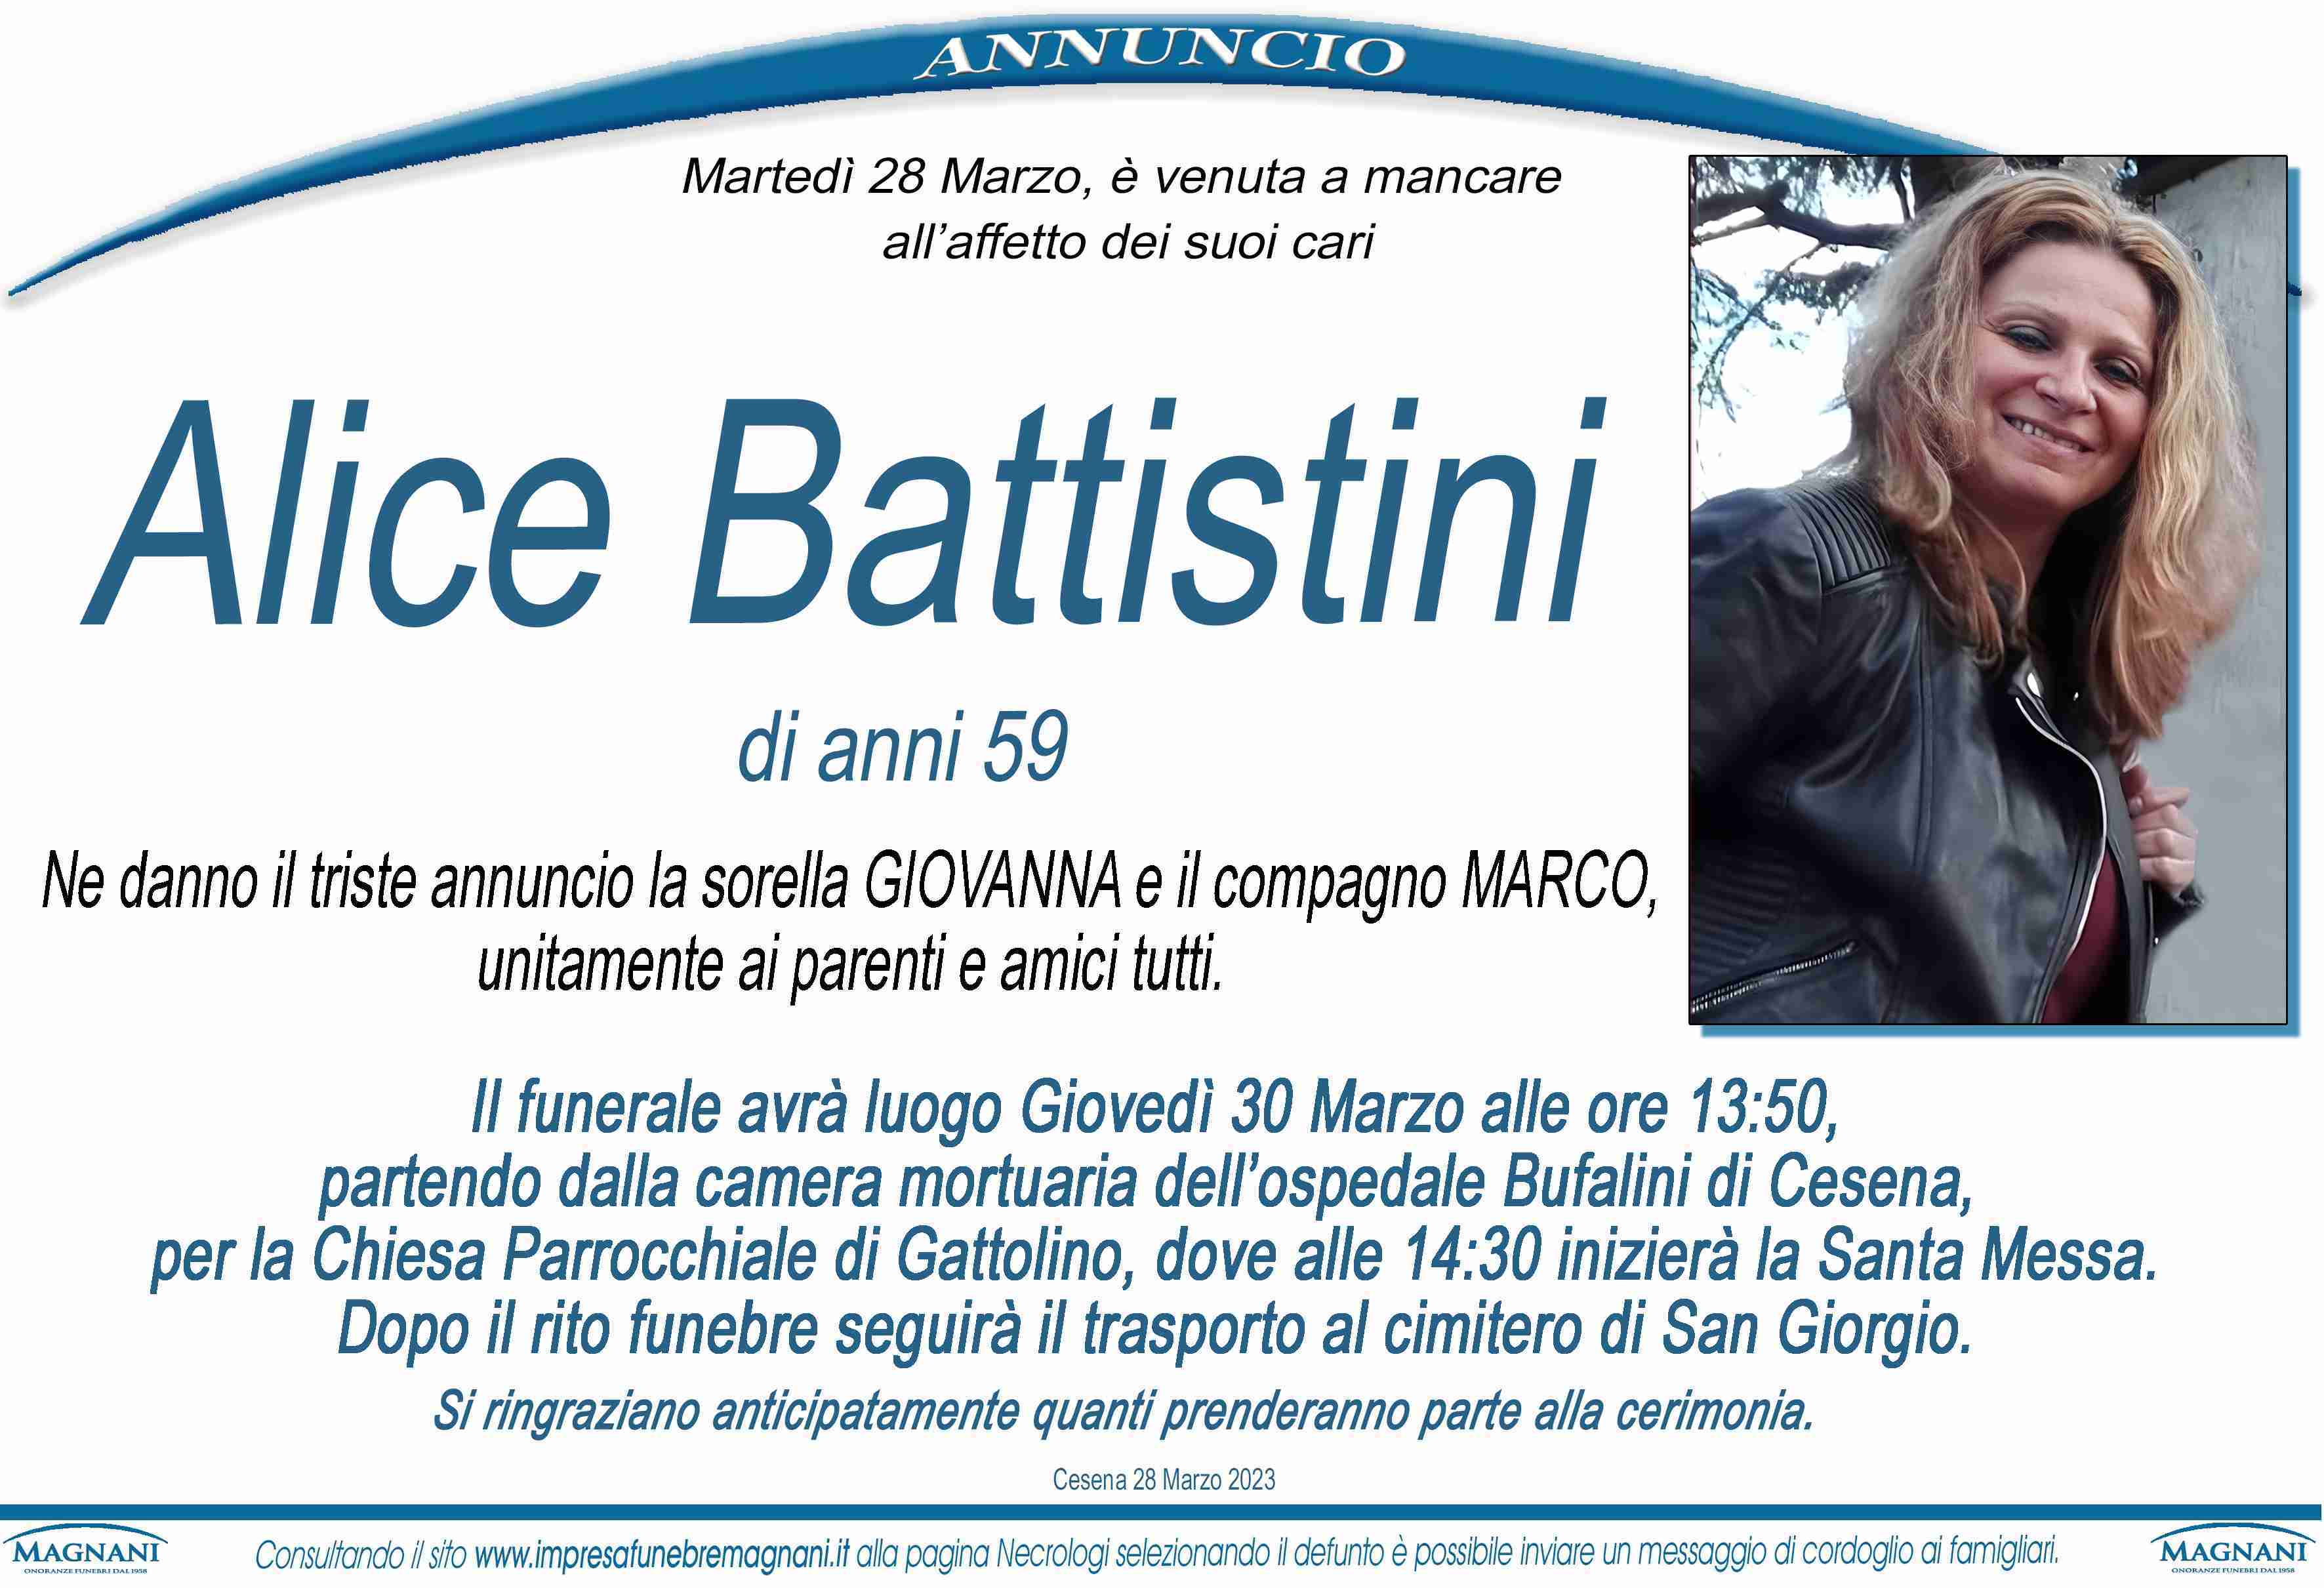 Alice Battistini